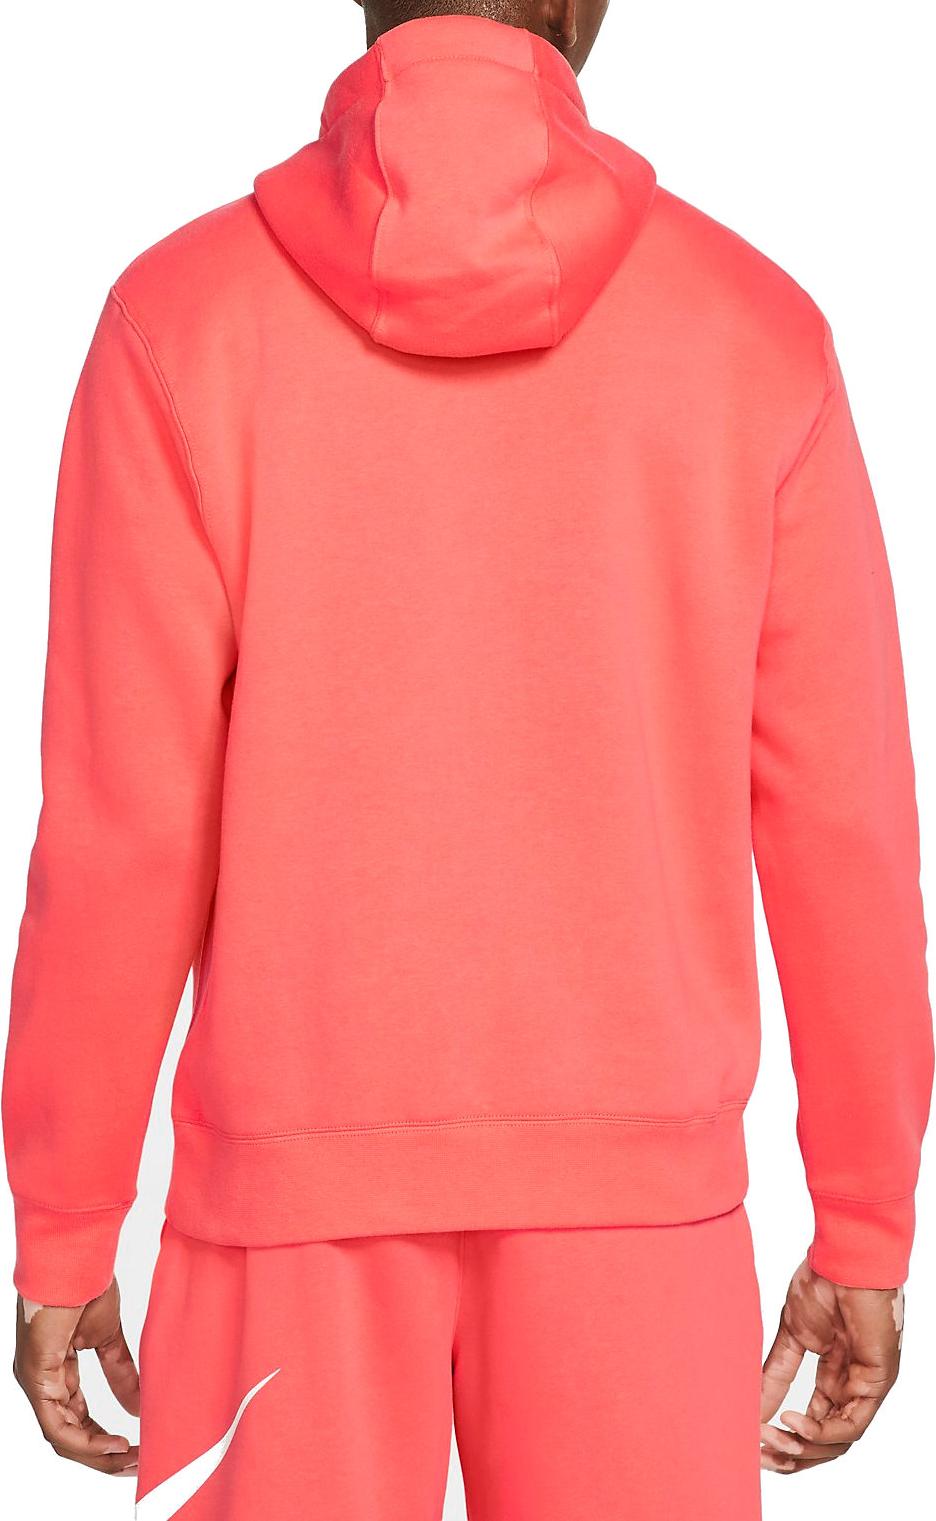 Hooded sweatshirt Nike M NSW CLUB HOODIE PO BB